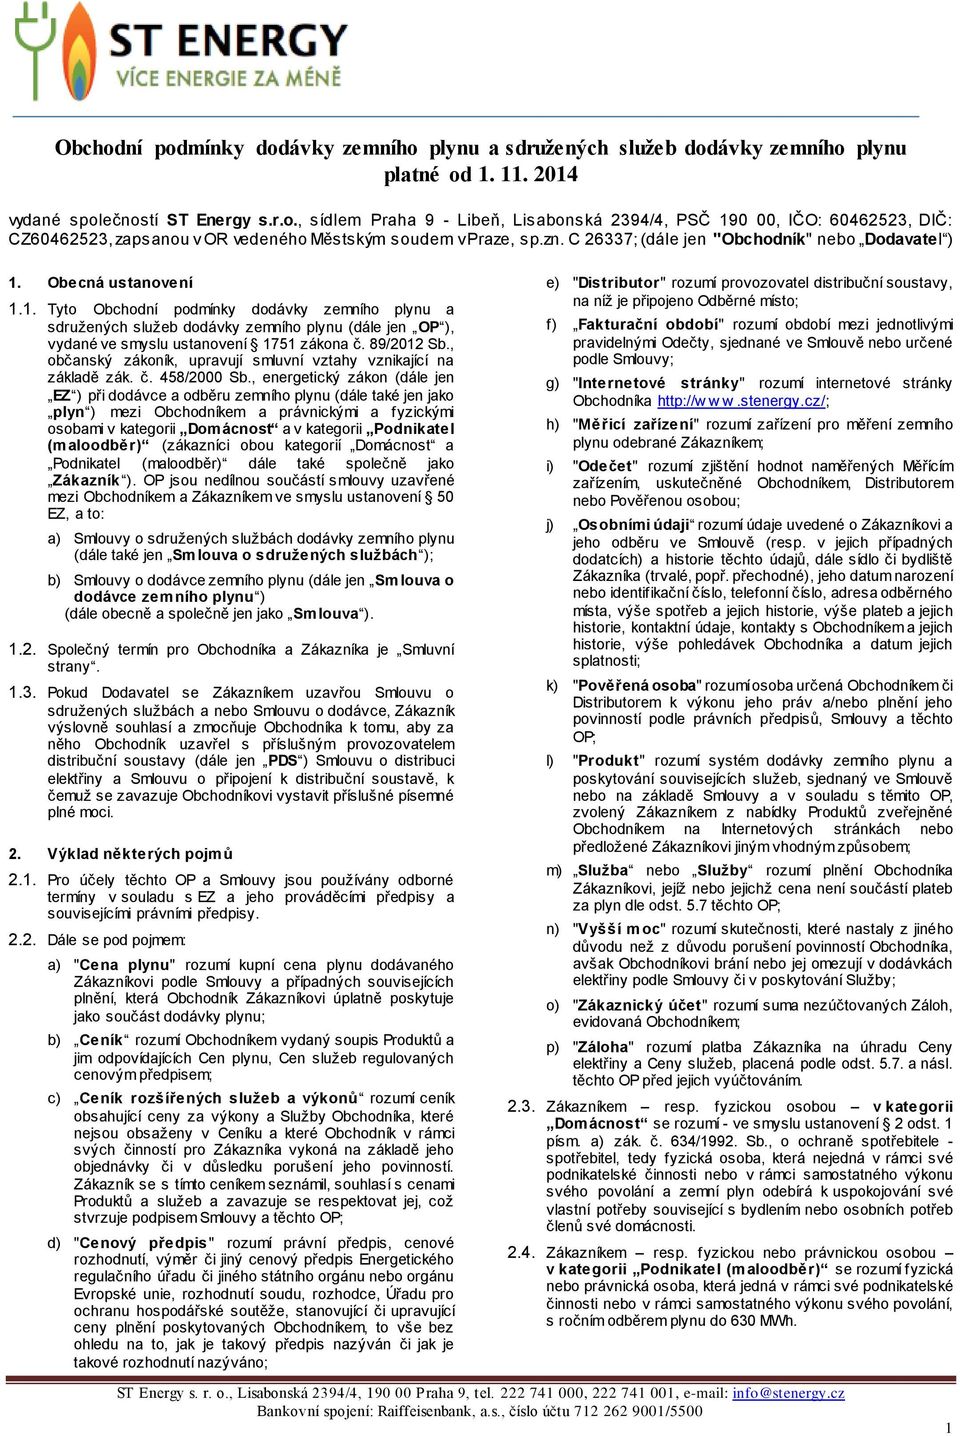 89/2012 Sb., občanský zákoník, upravují smluvní vztahy vznikající na základě zák. č. 458/2000 Sb.